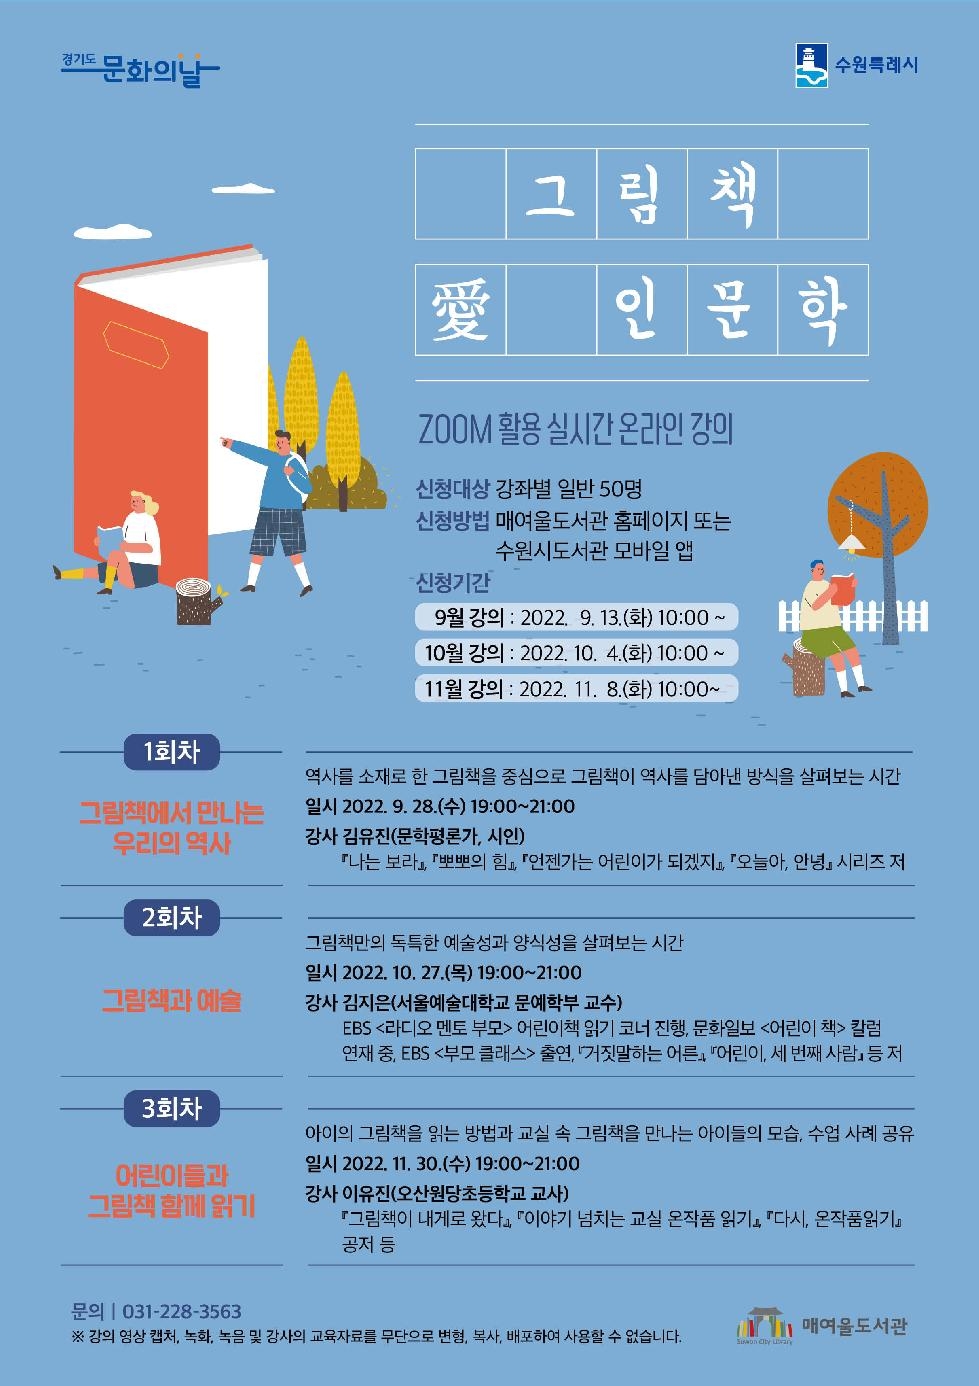 수원시 매여울도서관, 경기도 문화의 날 ‘그림책 愛 인문학’ 개최